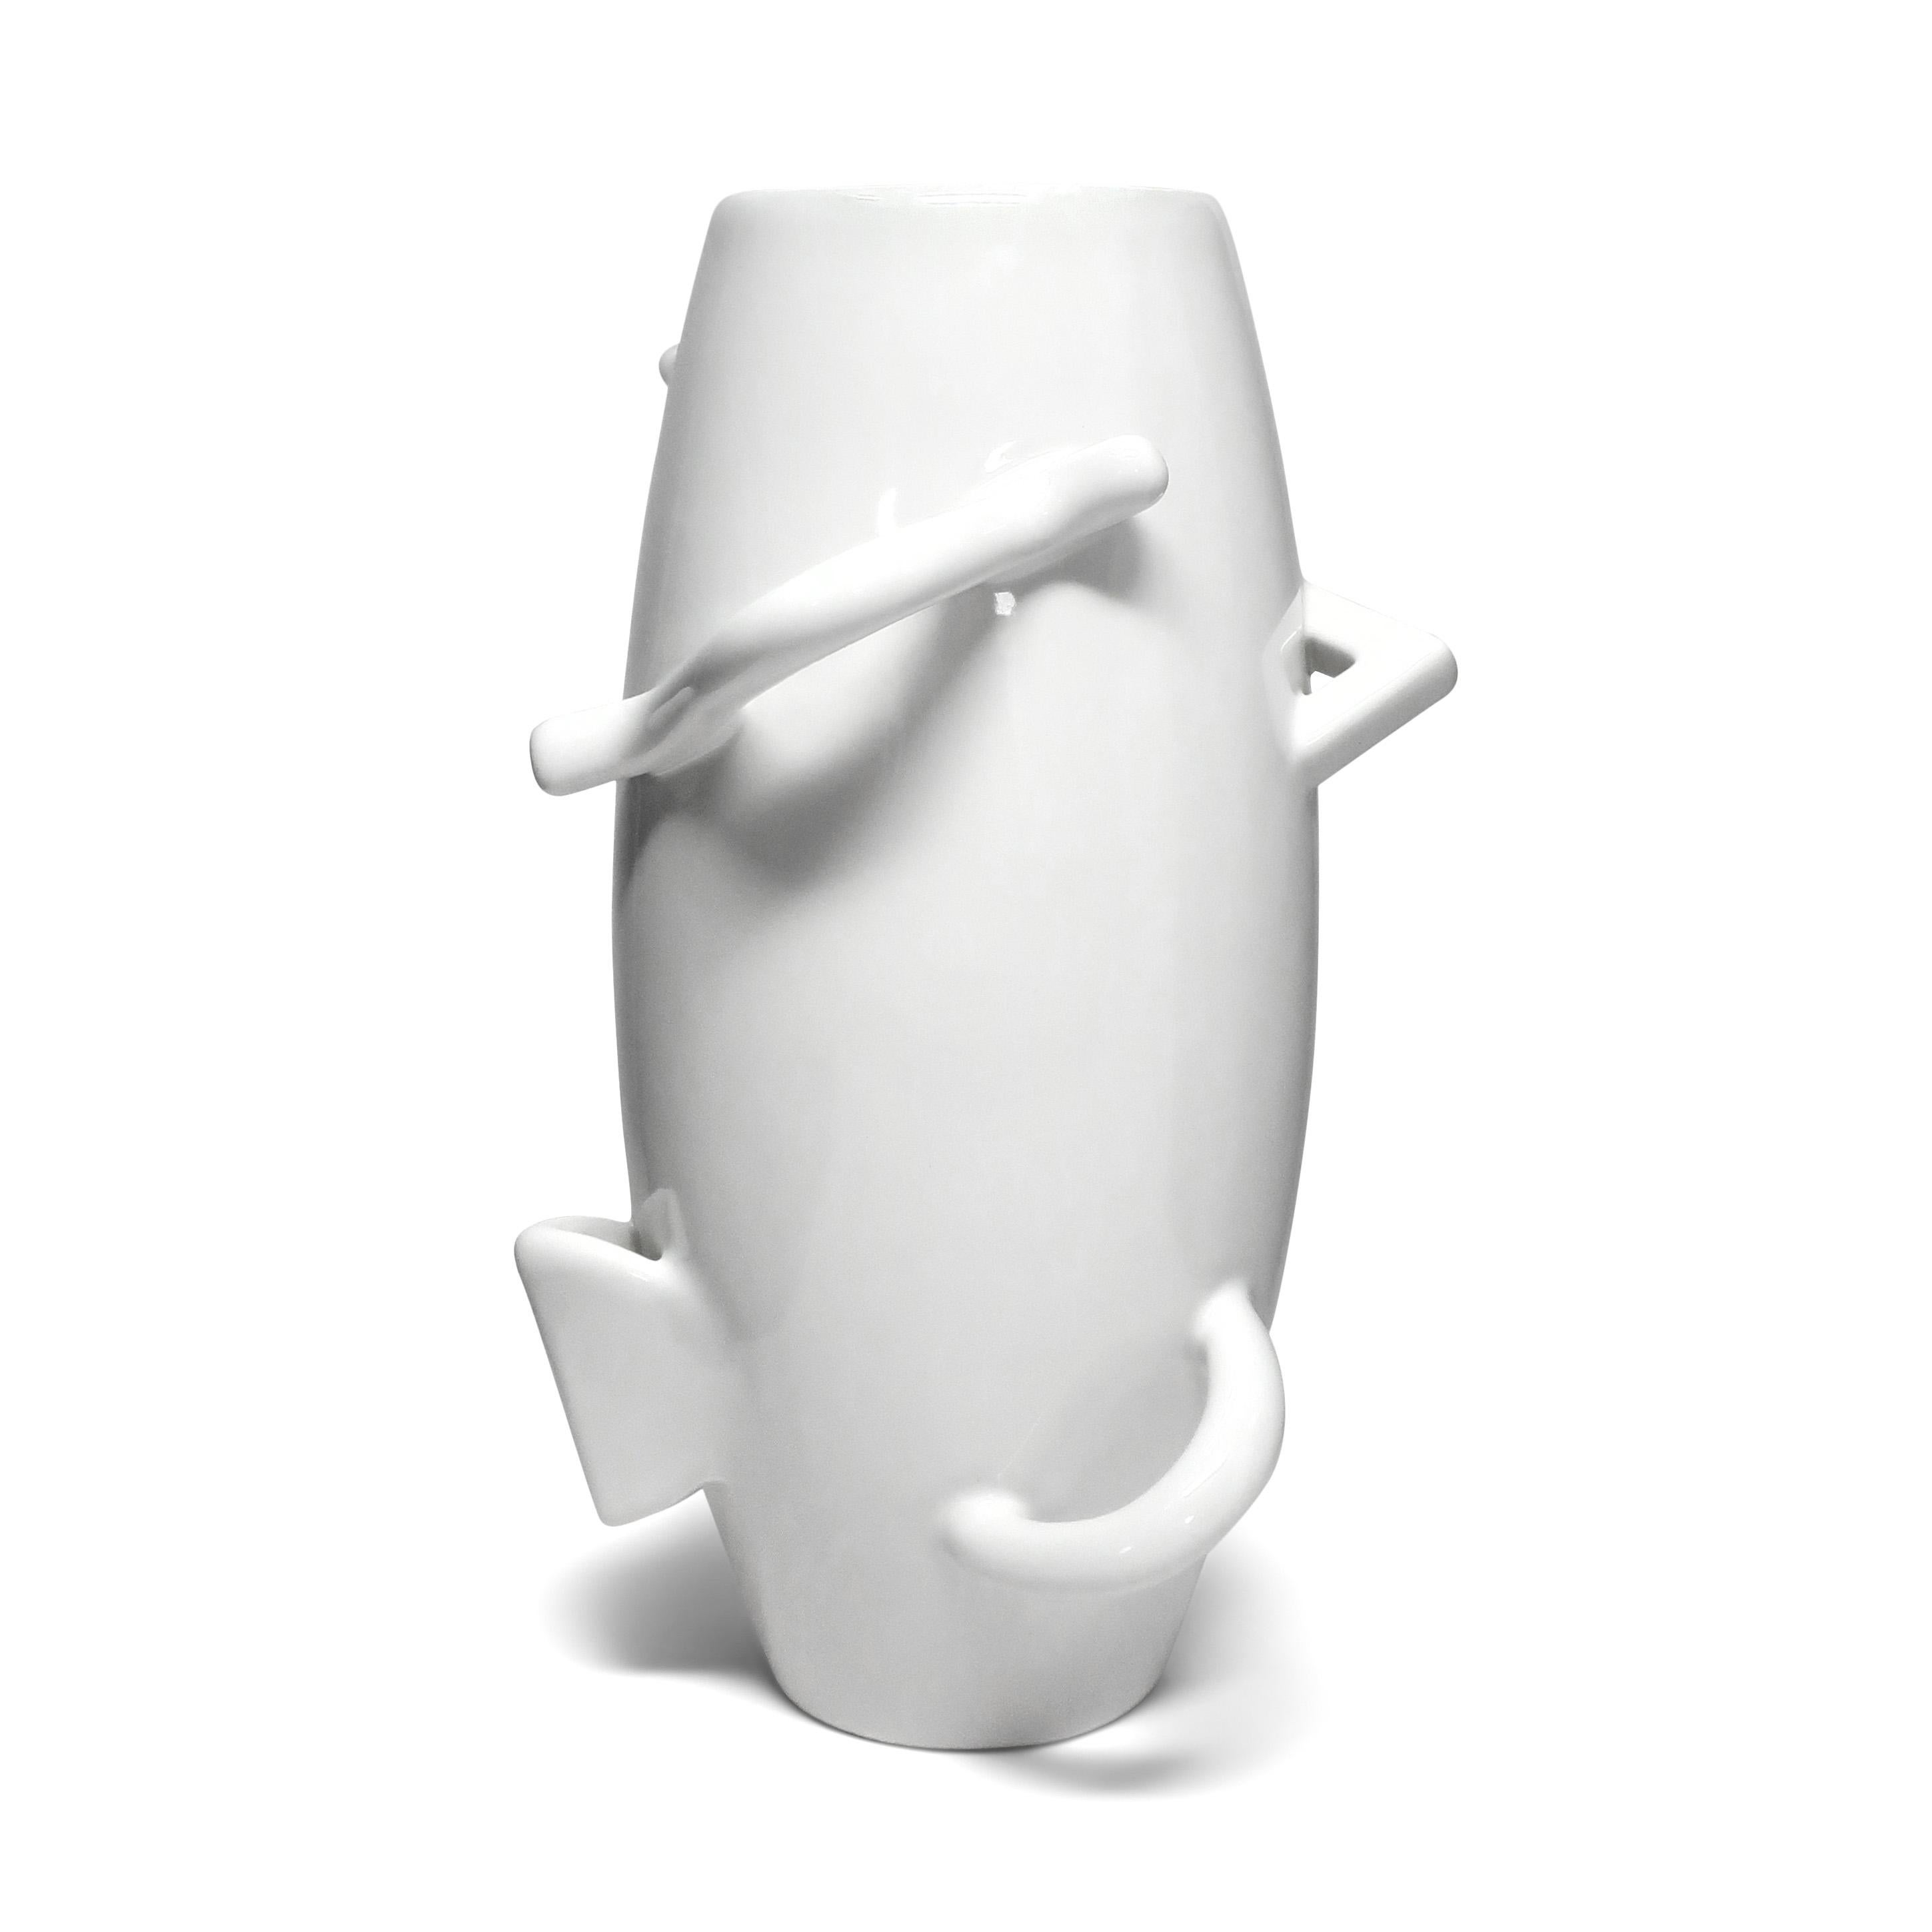 An amazing postmodern white porcelain vase designed by Alessandro Mendini (born 1931) for Zanotta's 